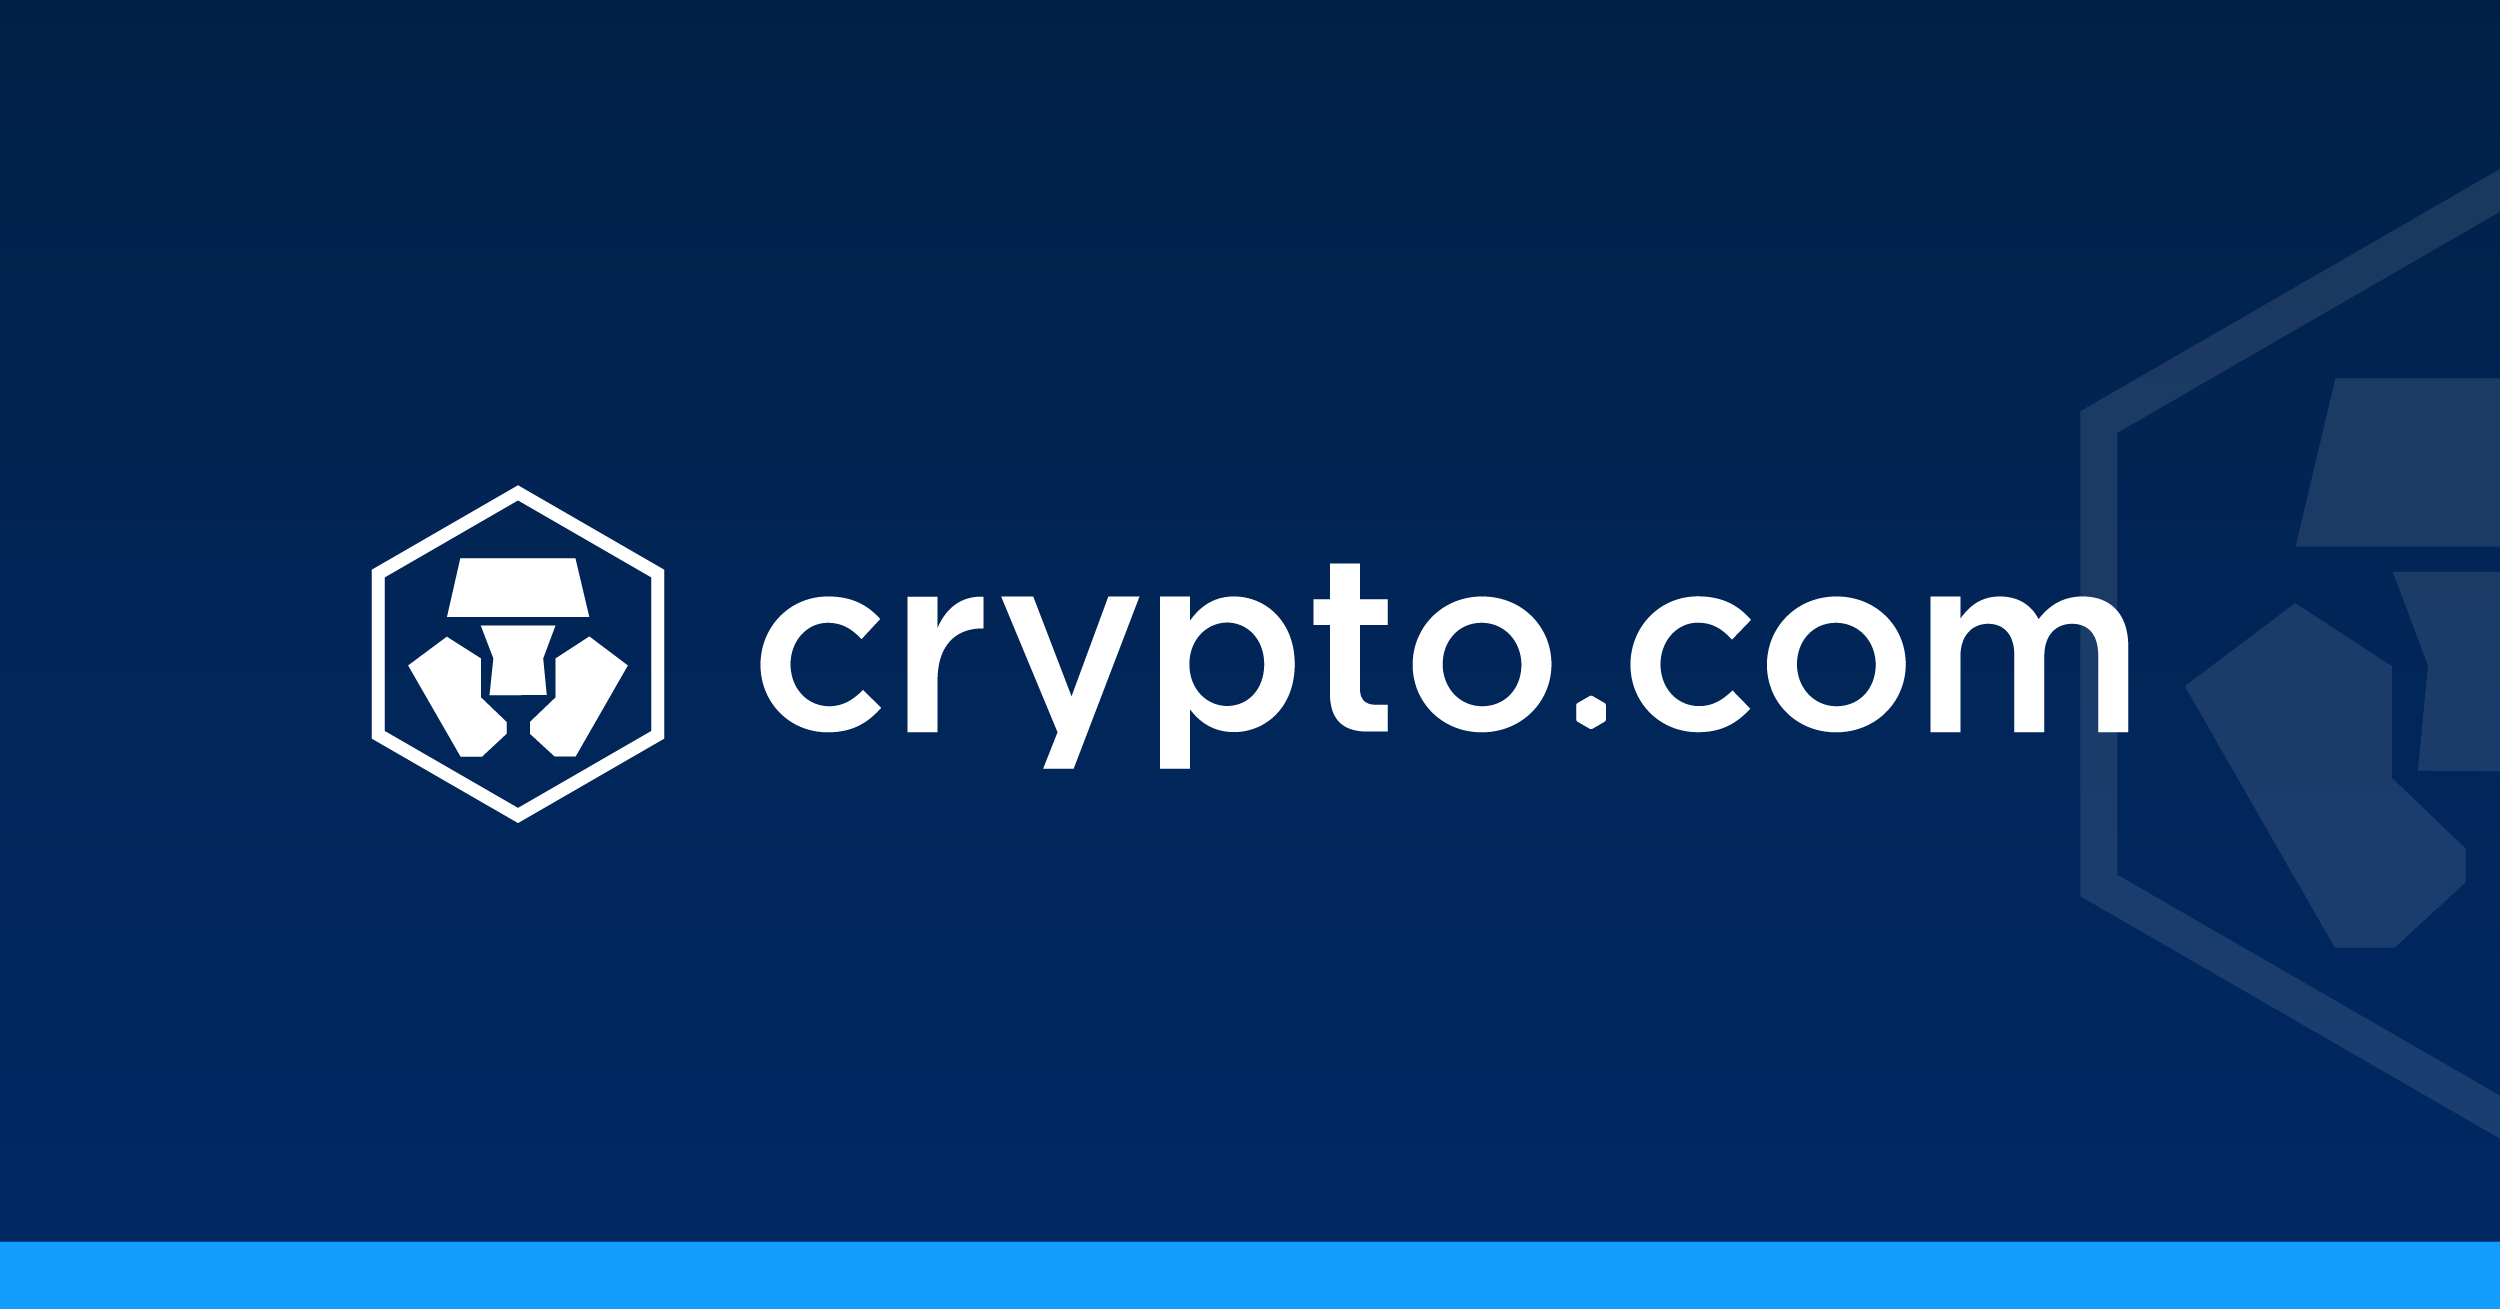 Jak funguje Crypto.com? Recenze projektu a dalí info ...